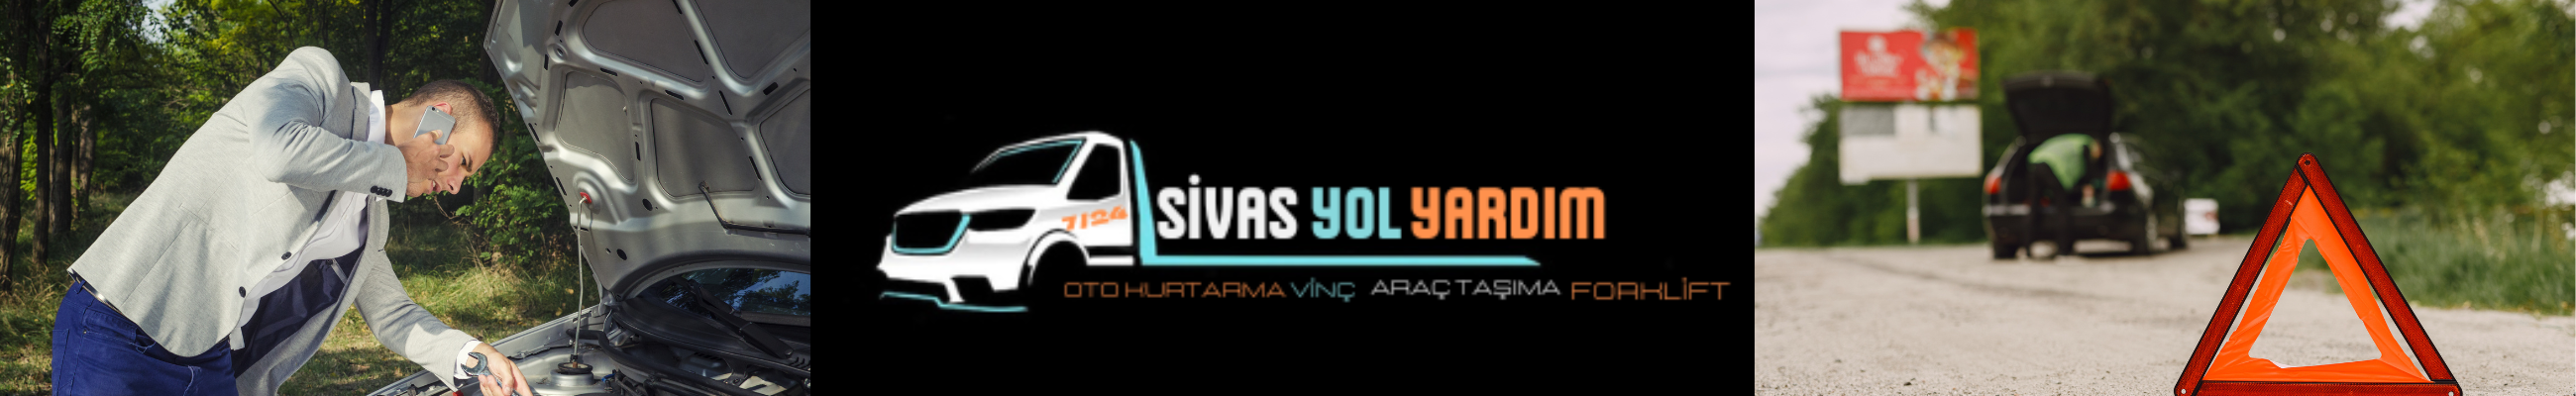 Sivas Yol Yardım, Sivas Çekici, Sivas Forklift, Sivas Vinç